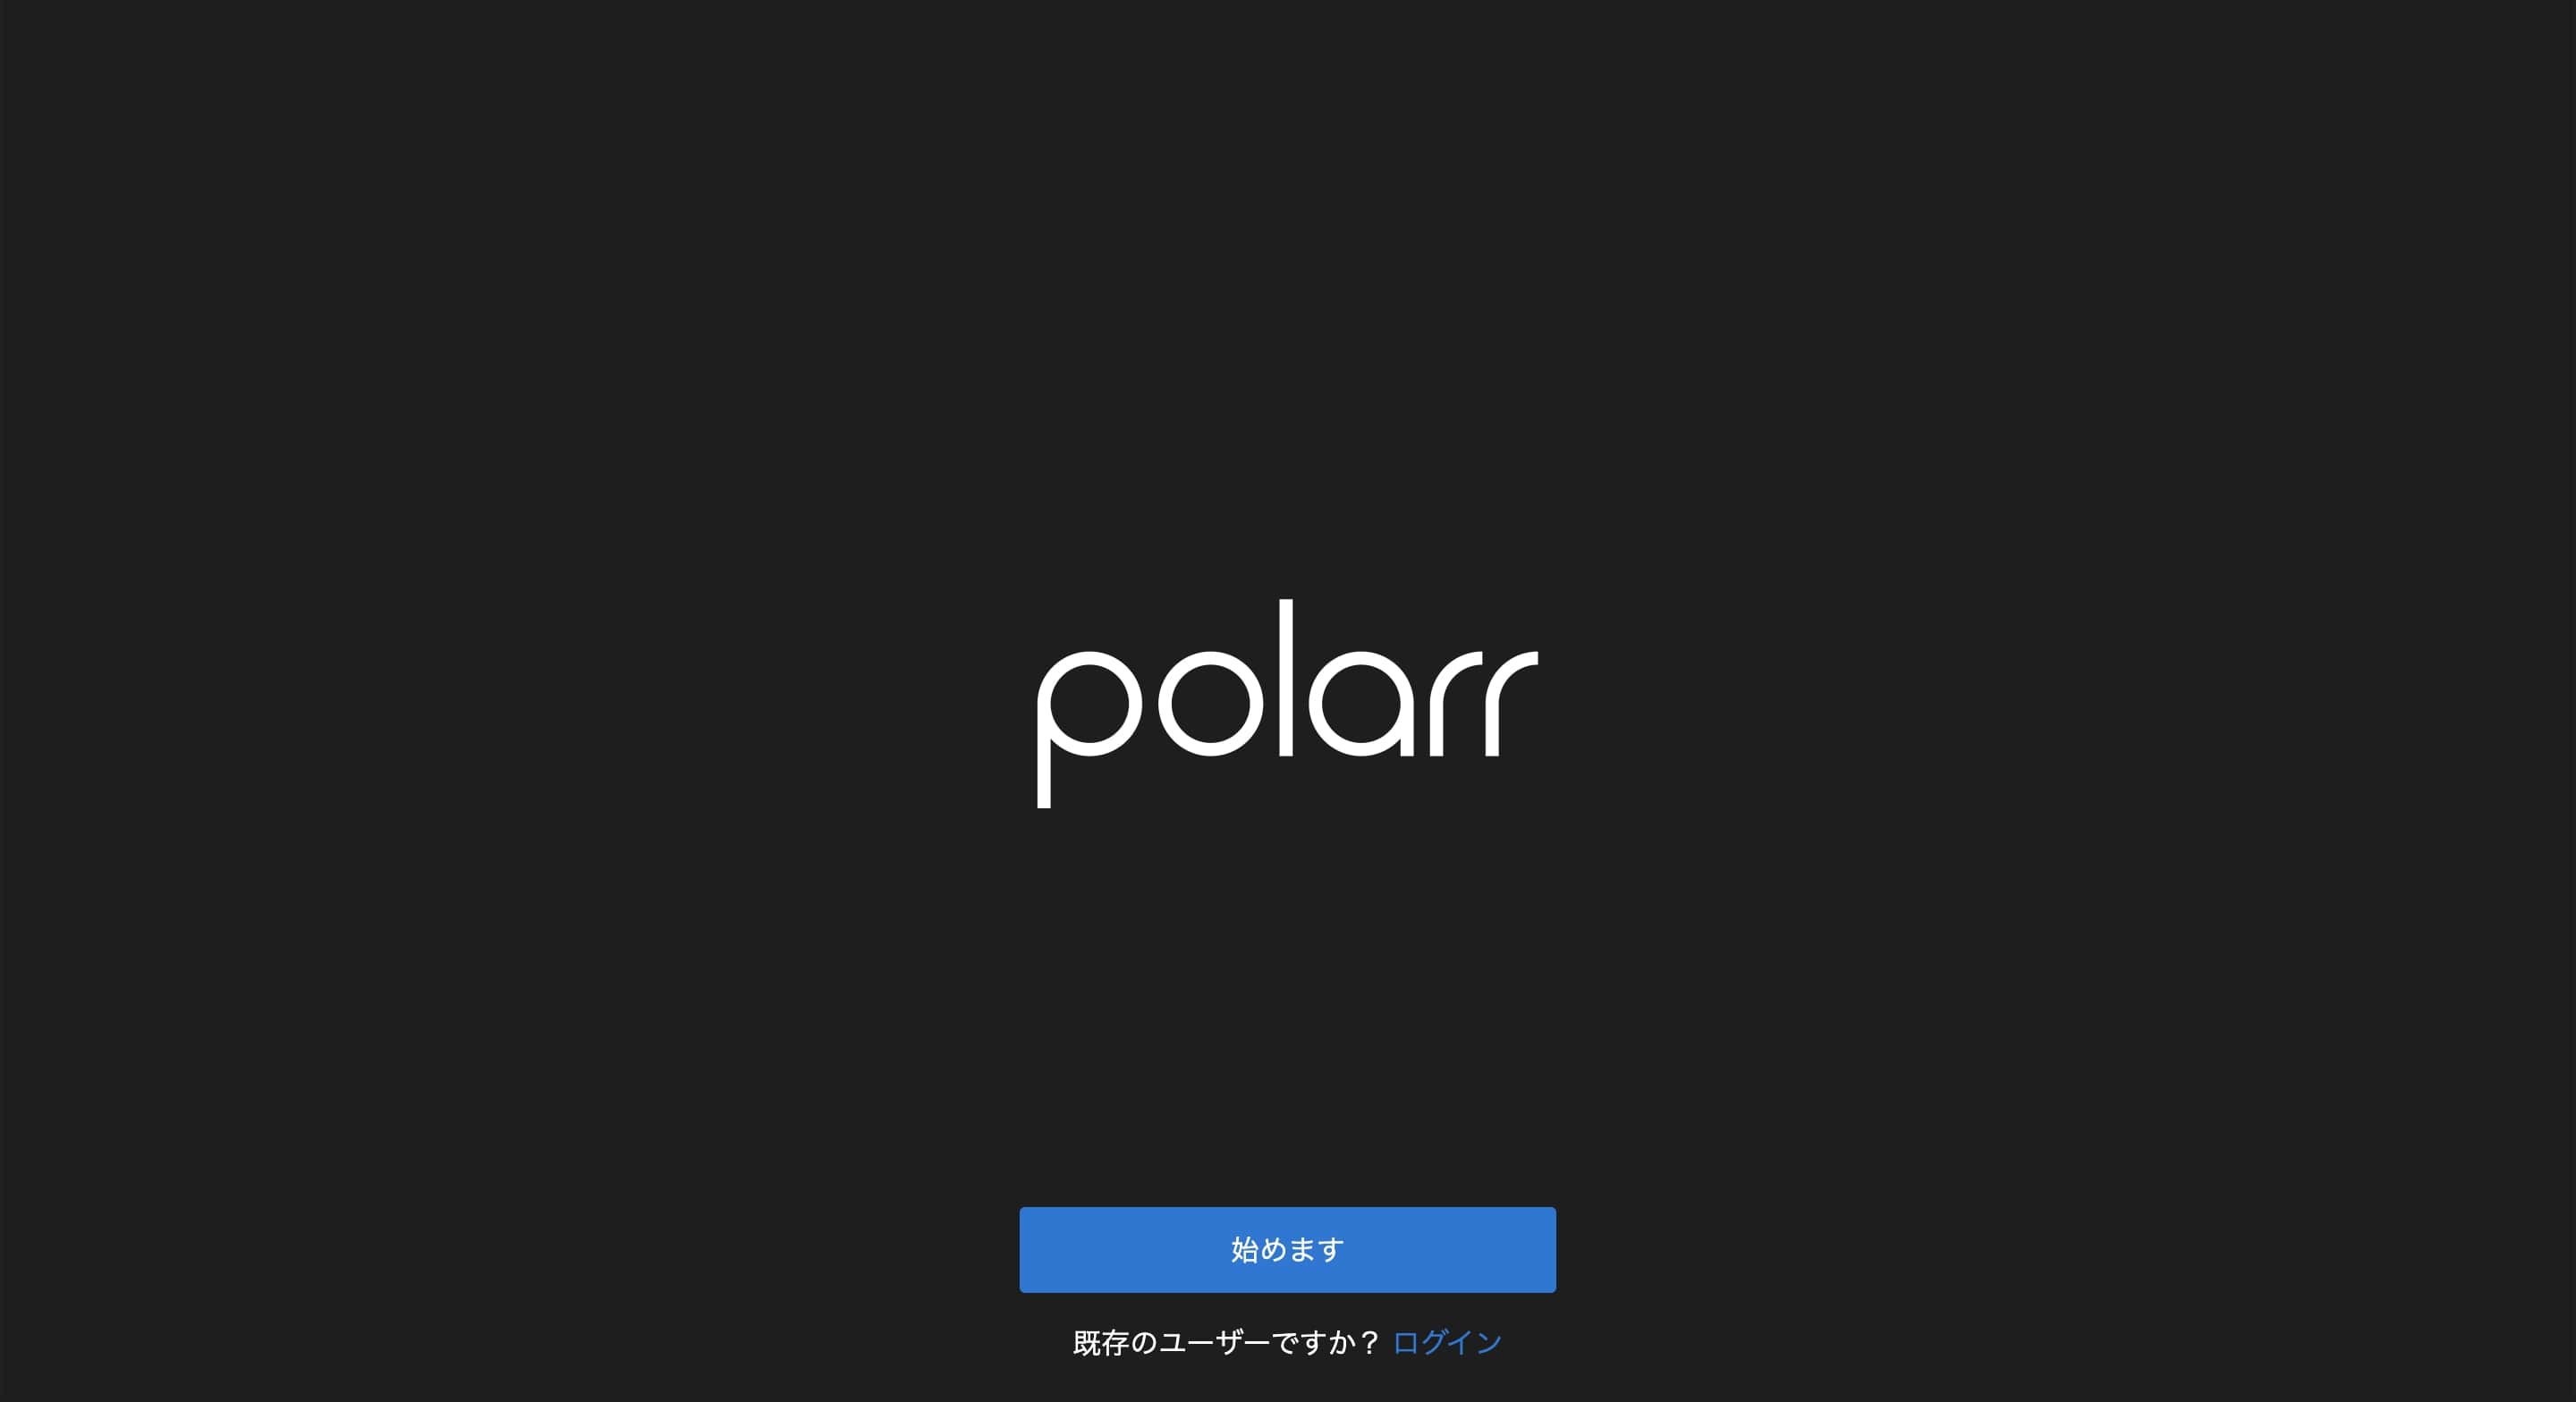 オンライン上で編集・加工ができる「Polarr」